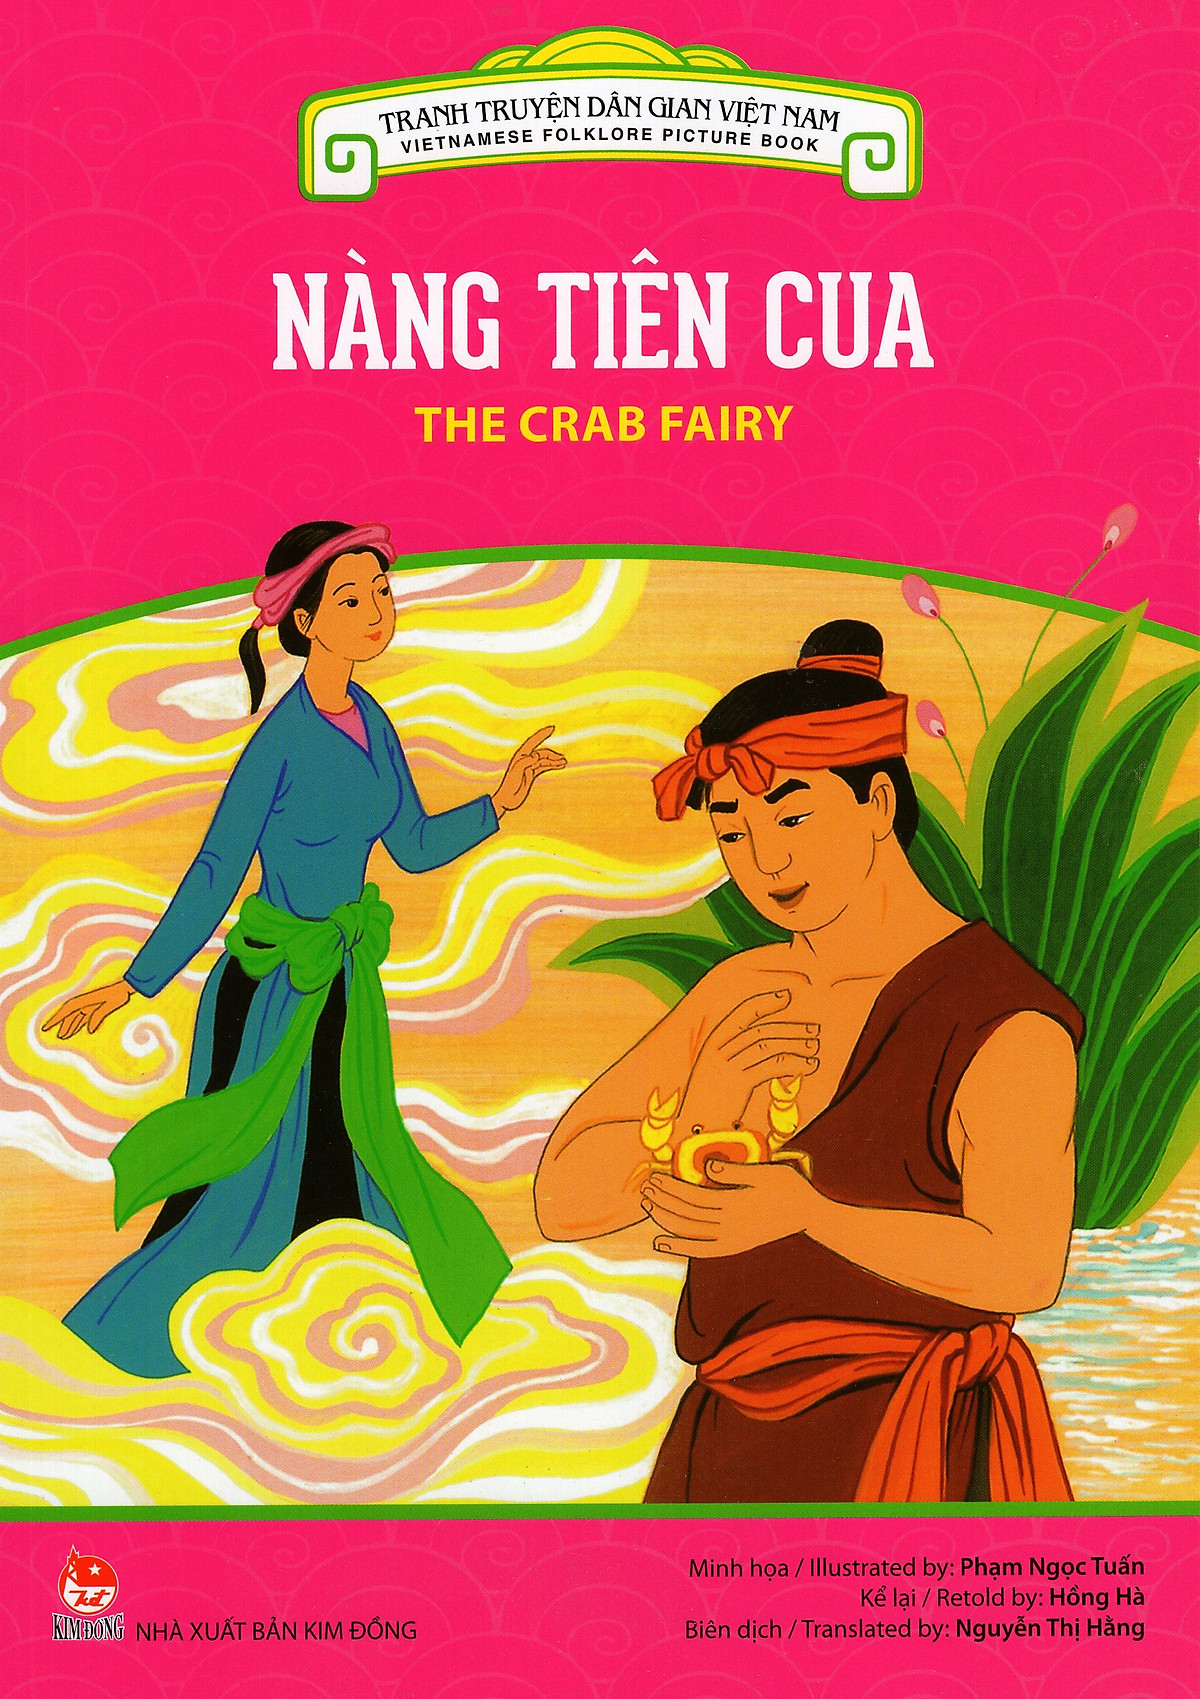 Tranh Truyện Dân Gian Việt Nam - Nàng Tiên Cua (Song Ngữ Việt - Anh) (2016)